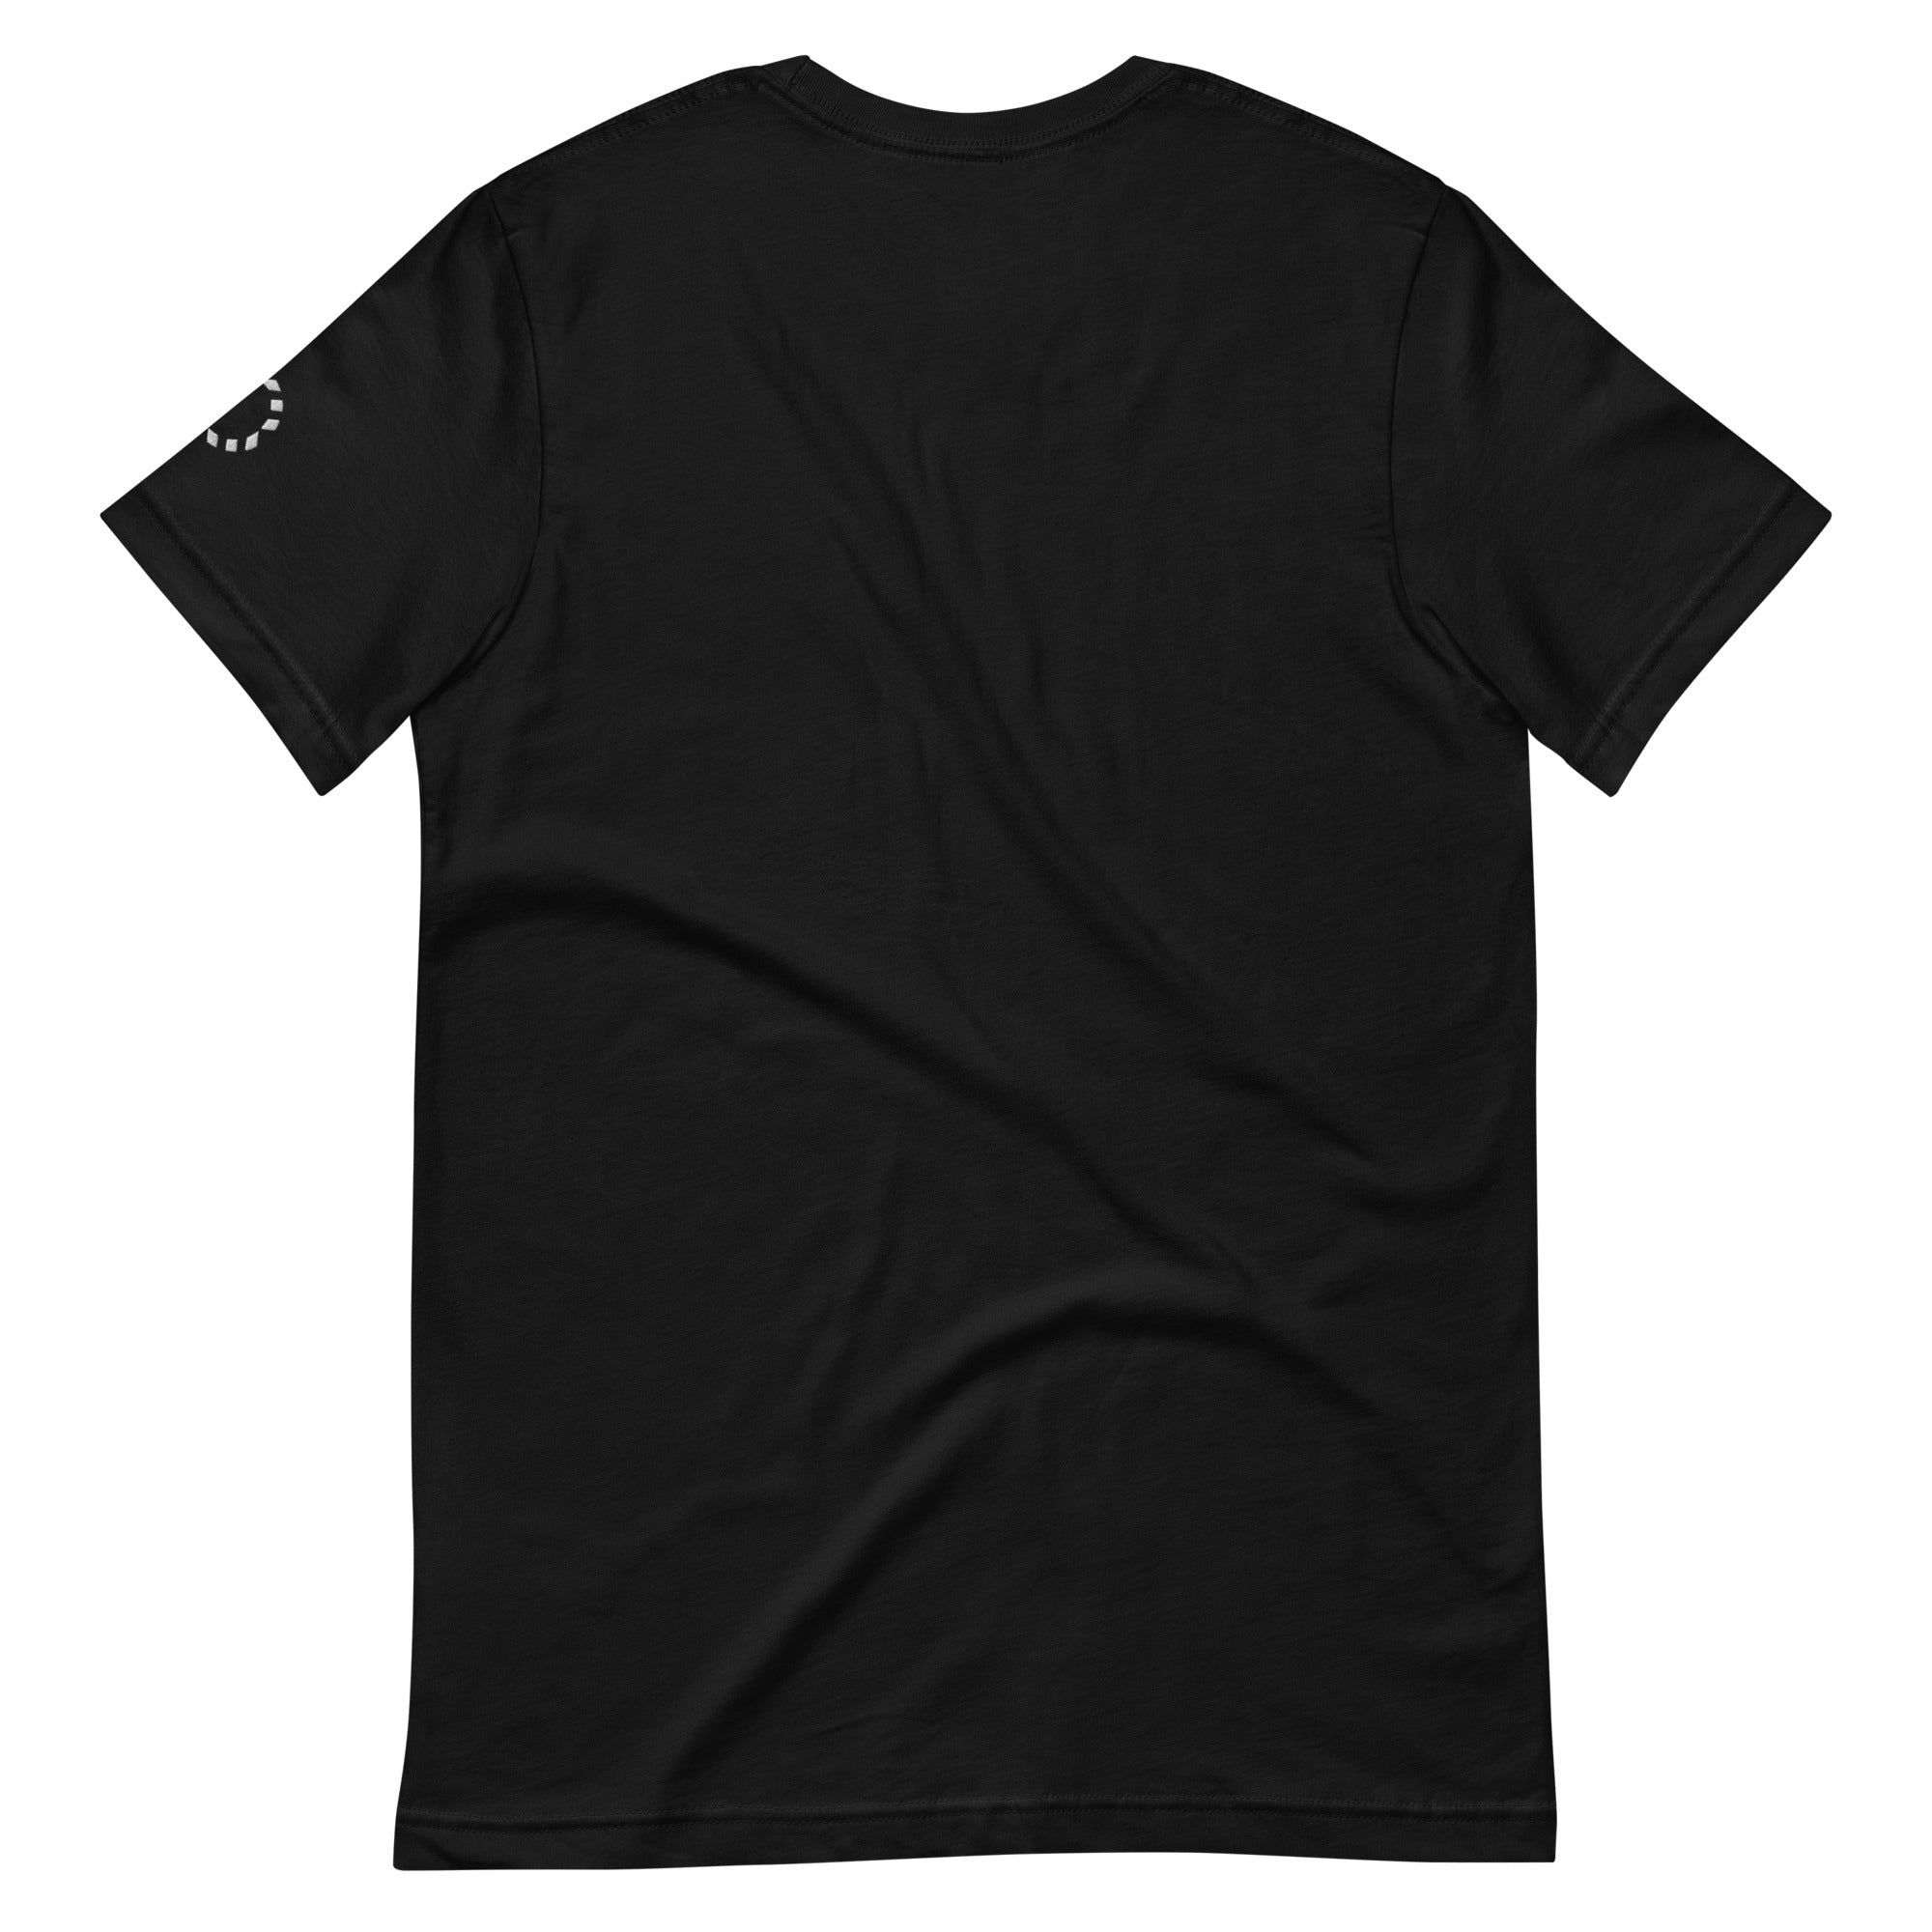 Original Black Unisex t-shirt